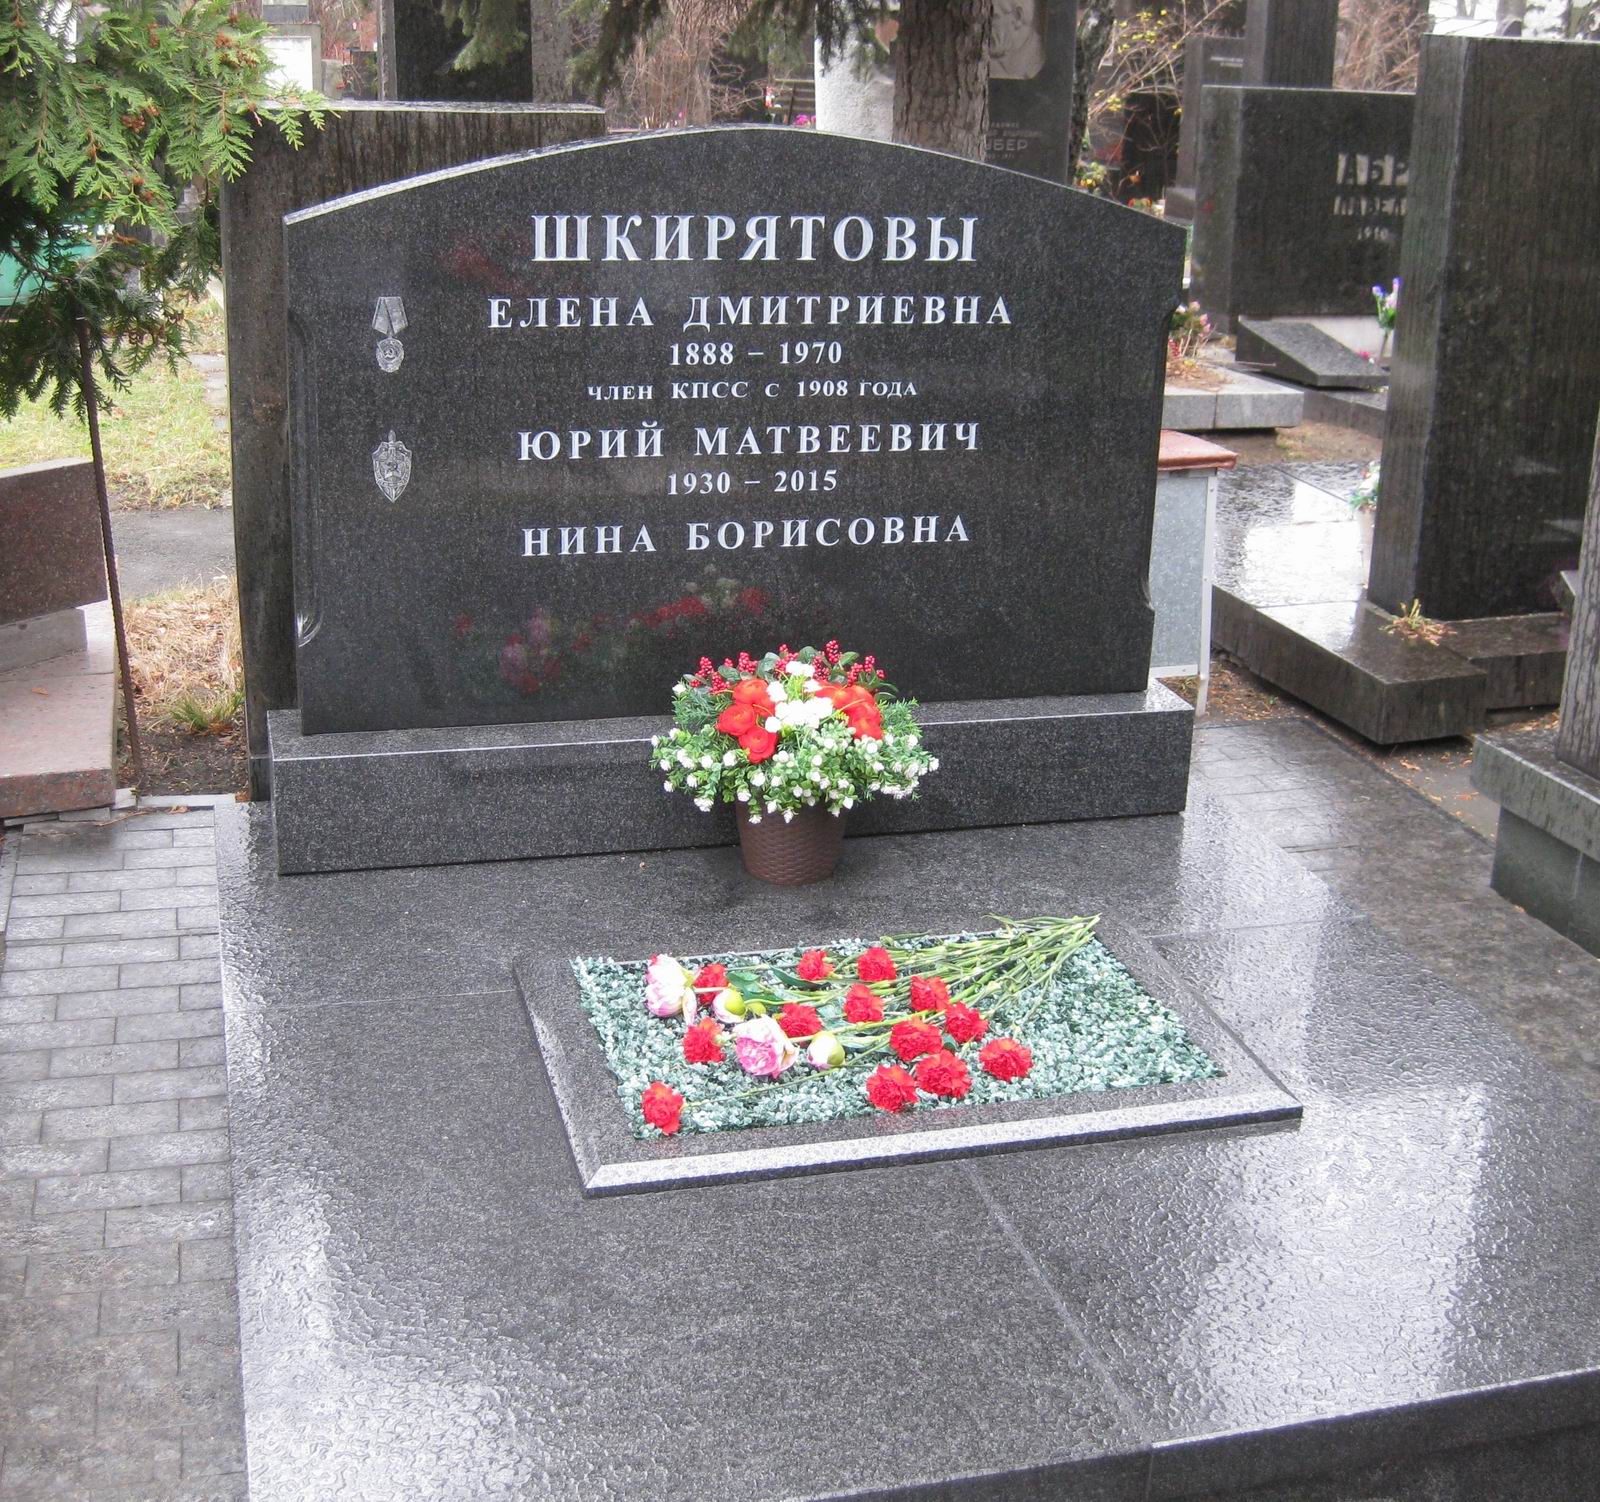 Памятник на могиле Шкирятовой Е.Д. (1888-1970), на Новодевичьем кладбище (7-11-10).